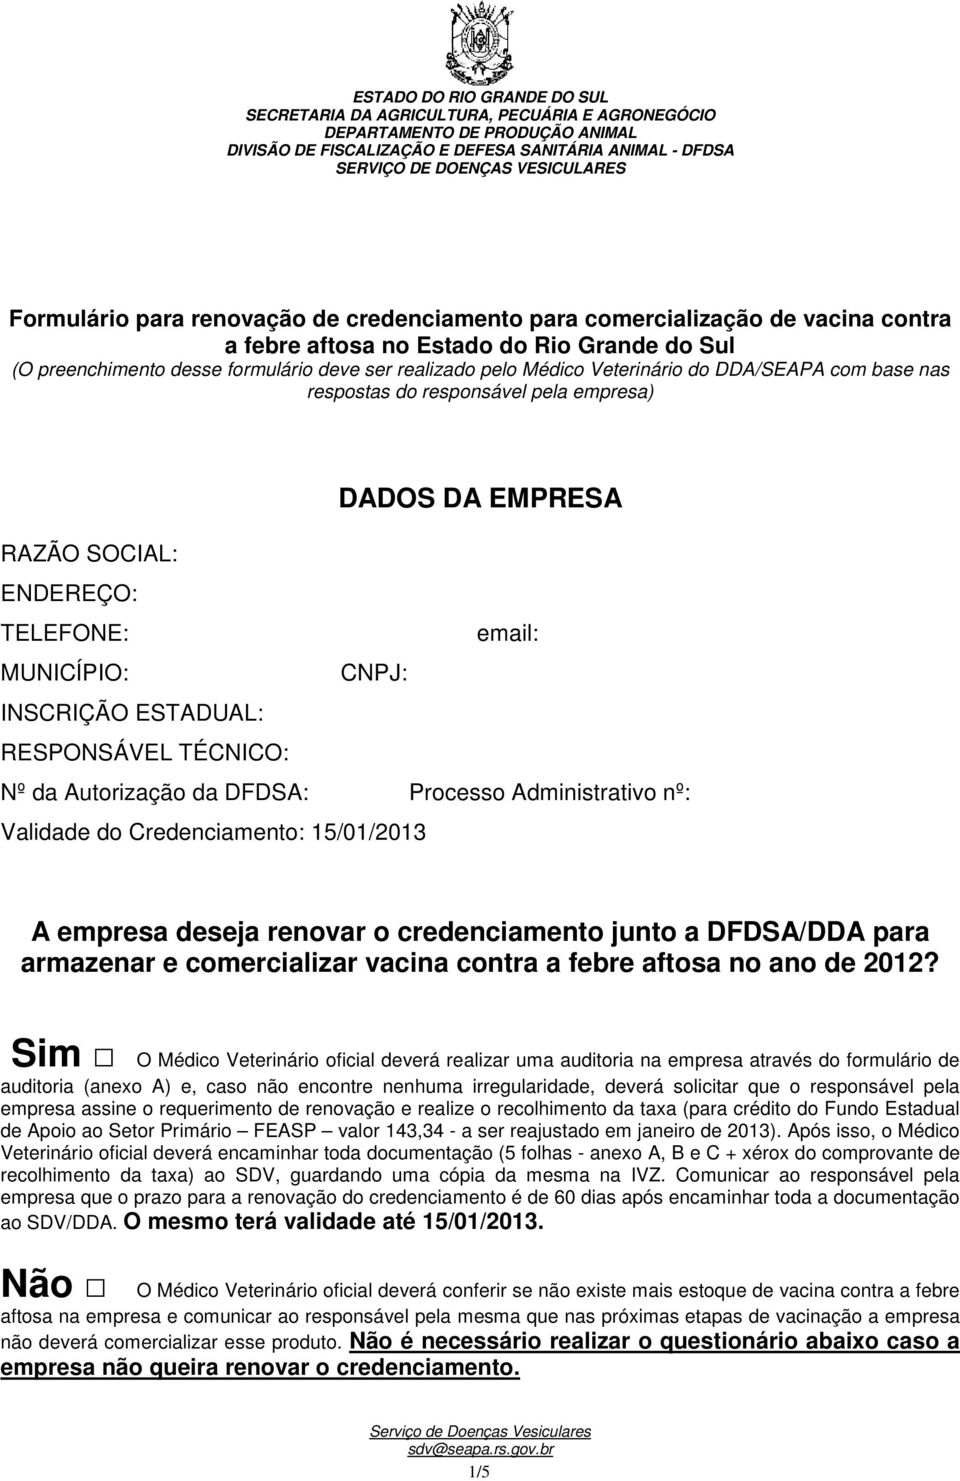 Autorização da DFDSA: Processo Administrativo nº: Validade do Credenciamento: 15/01/2013 A empresa deseja renovar o credenciamento junto a DFDSA/DDA para armazenar e comercializar vacina contra a